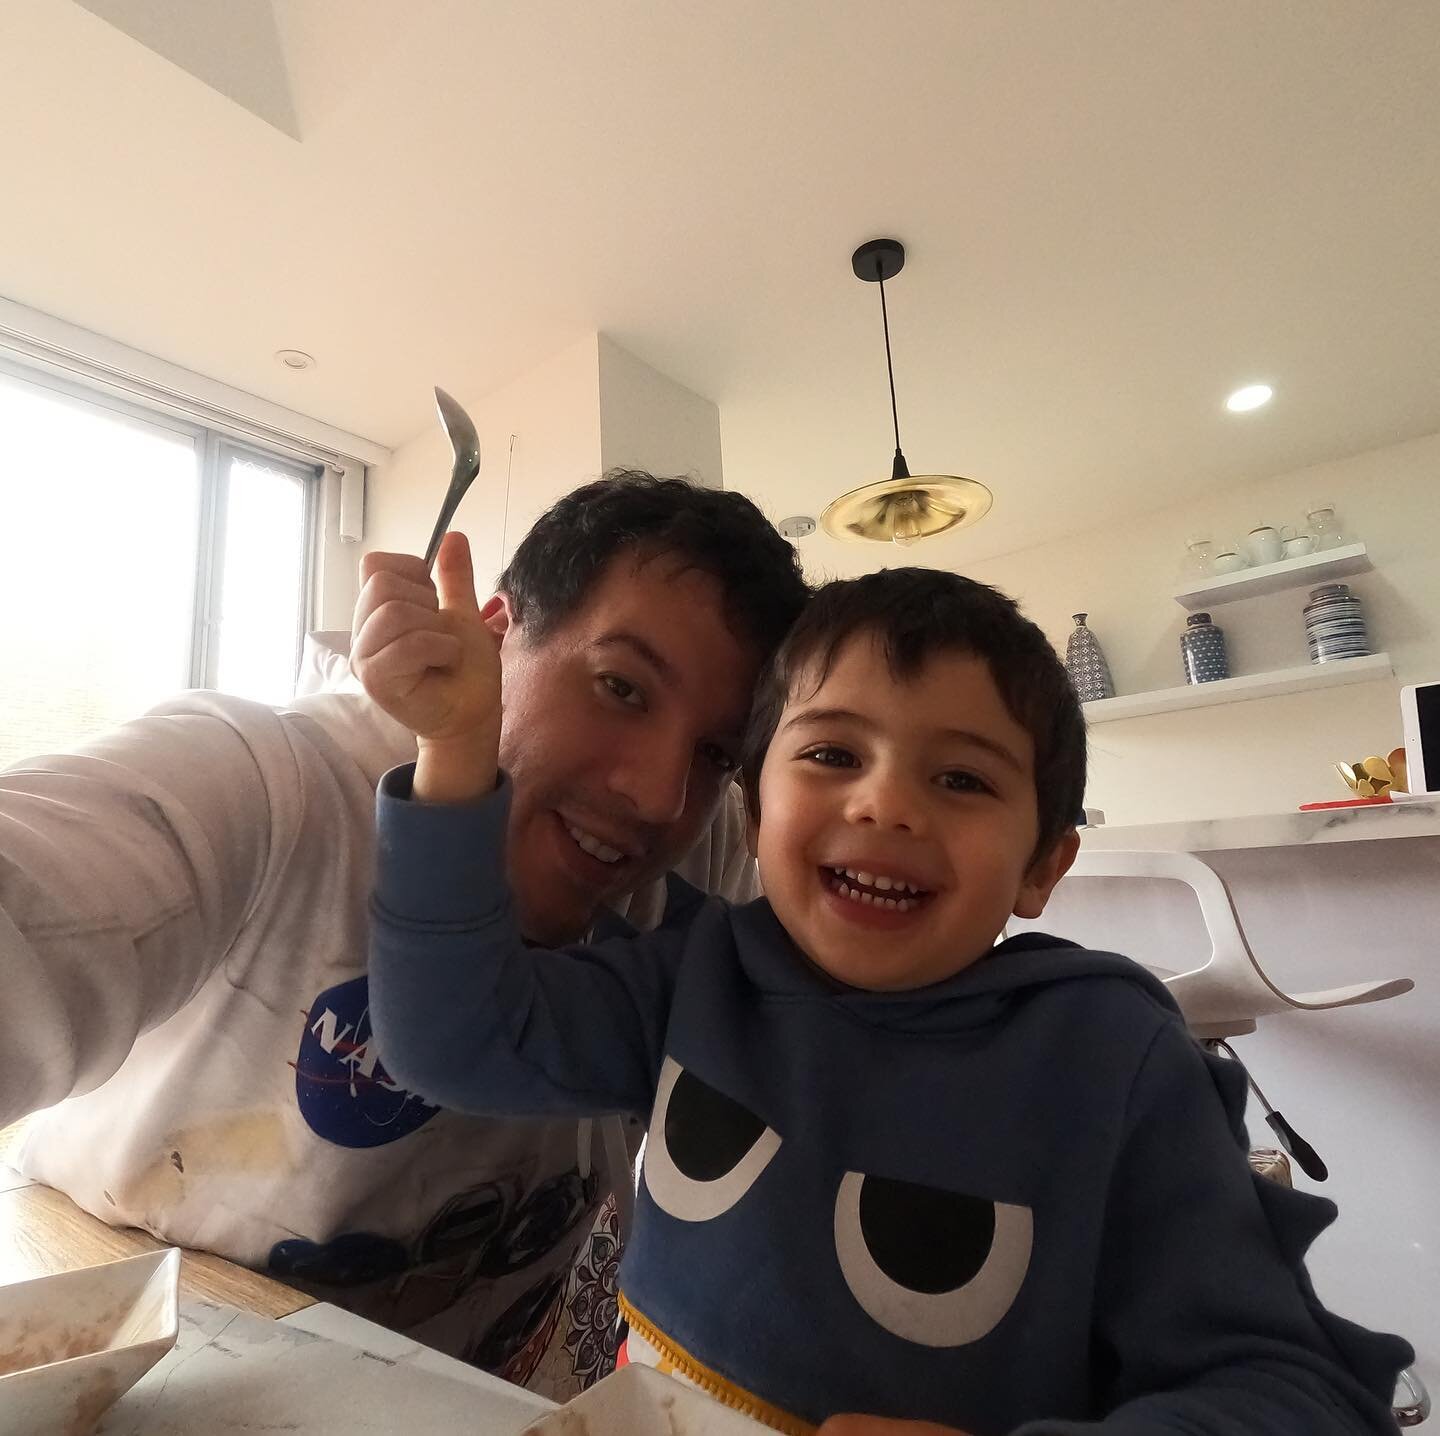 GoPro 9 selfie! 
#gopro #goprohero9 #proddad #familytime #staysafe